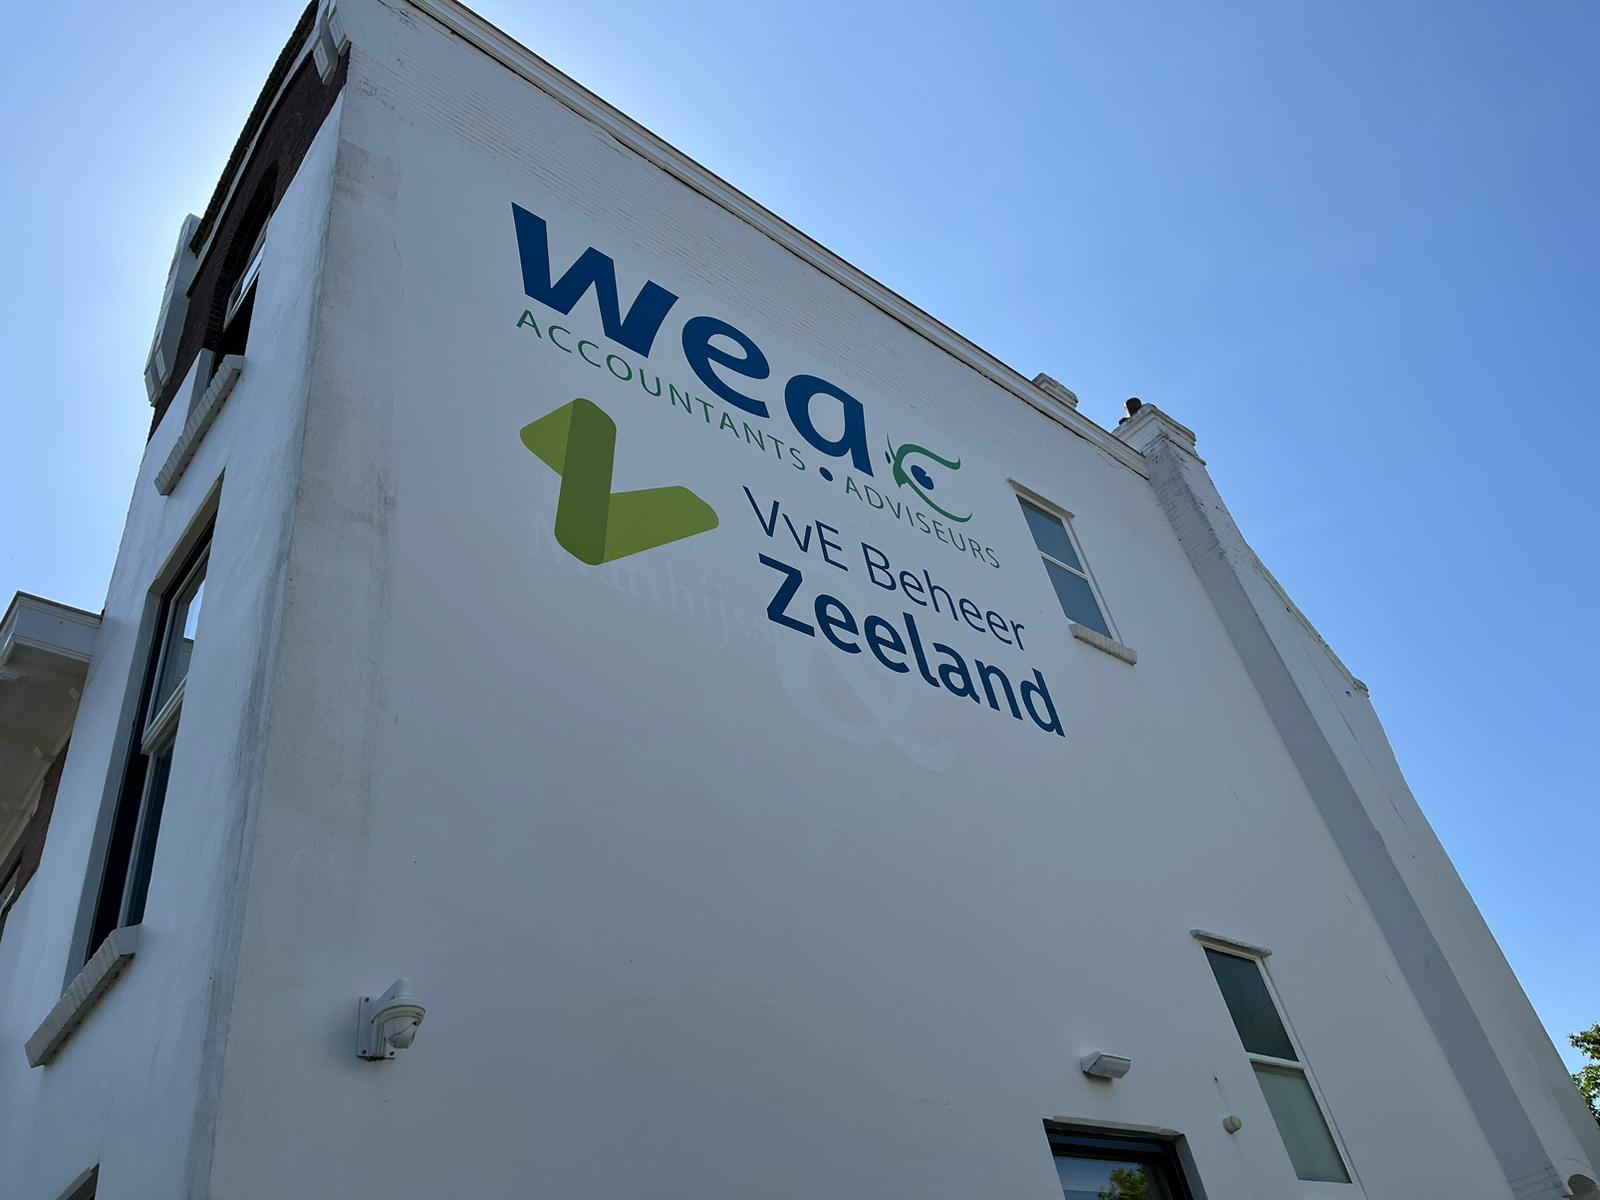 Gevelstickers van WEA accountants en VvE Beheer Zeeland